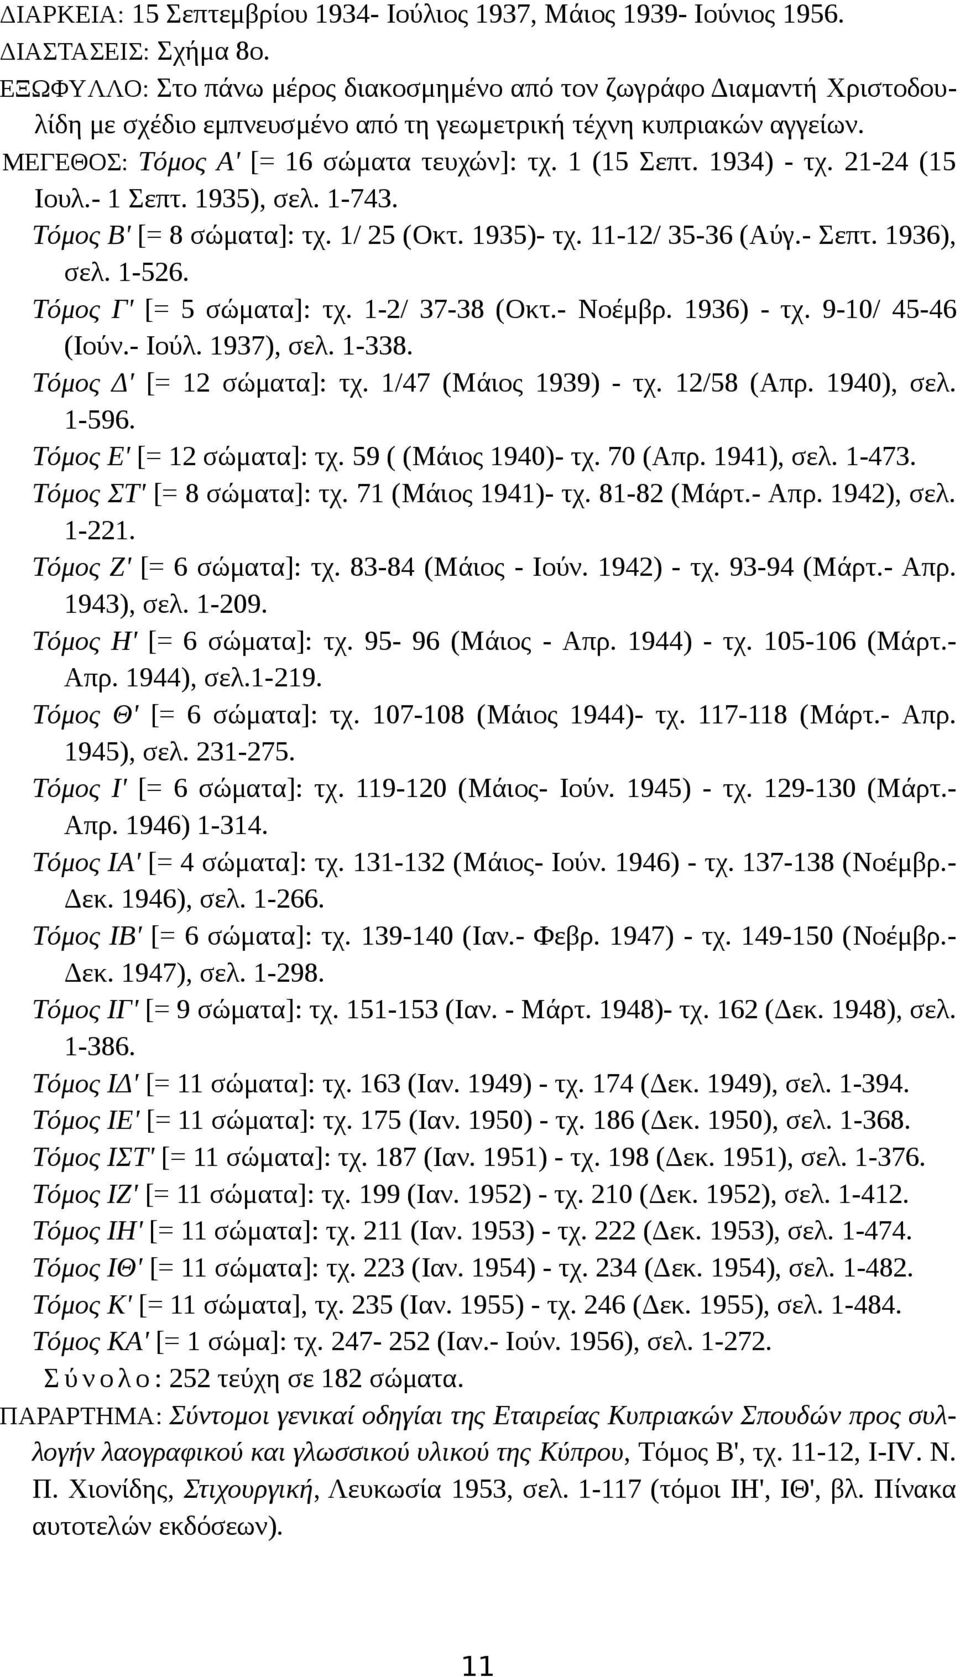 1934) - τχ. 21-24 (15 Iουλ.- 1 Σεπτ. 1935), σελ. 1-743. Tόμος B' [= 8 σώματα]: τχ. 1/ 25 (Oκτ. 1935)- τχ. 11-12/ 35-36 (Aύγ.- Σεπτ. 1936), σελ. 1-526. Tόμος Γ' [= 5 σώματα]: τχ. 1-2/ 37-38 (Oκτ.